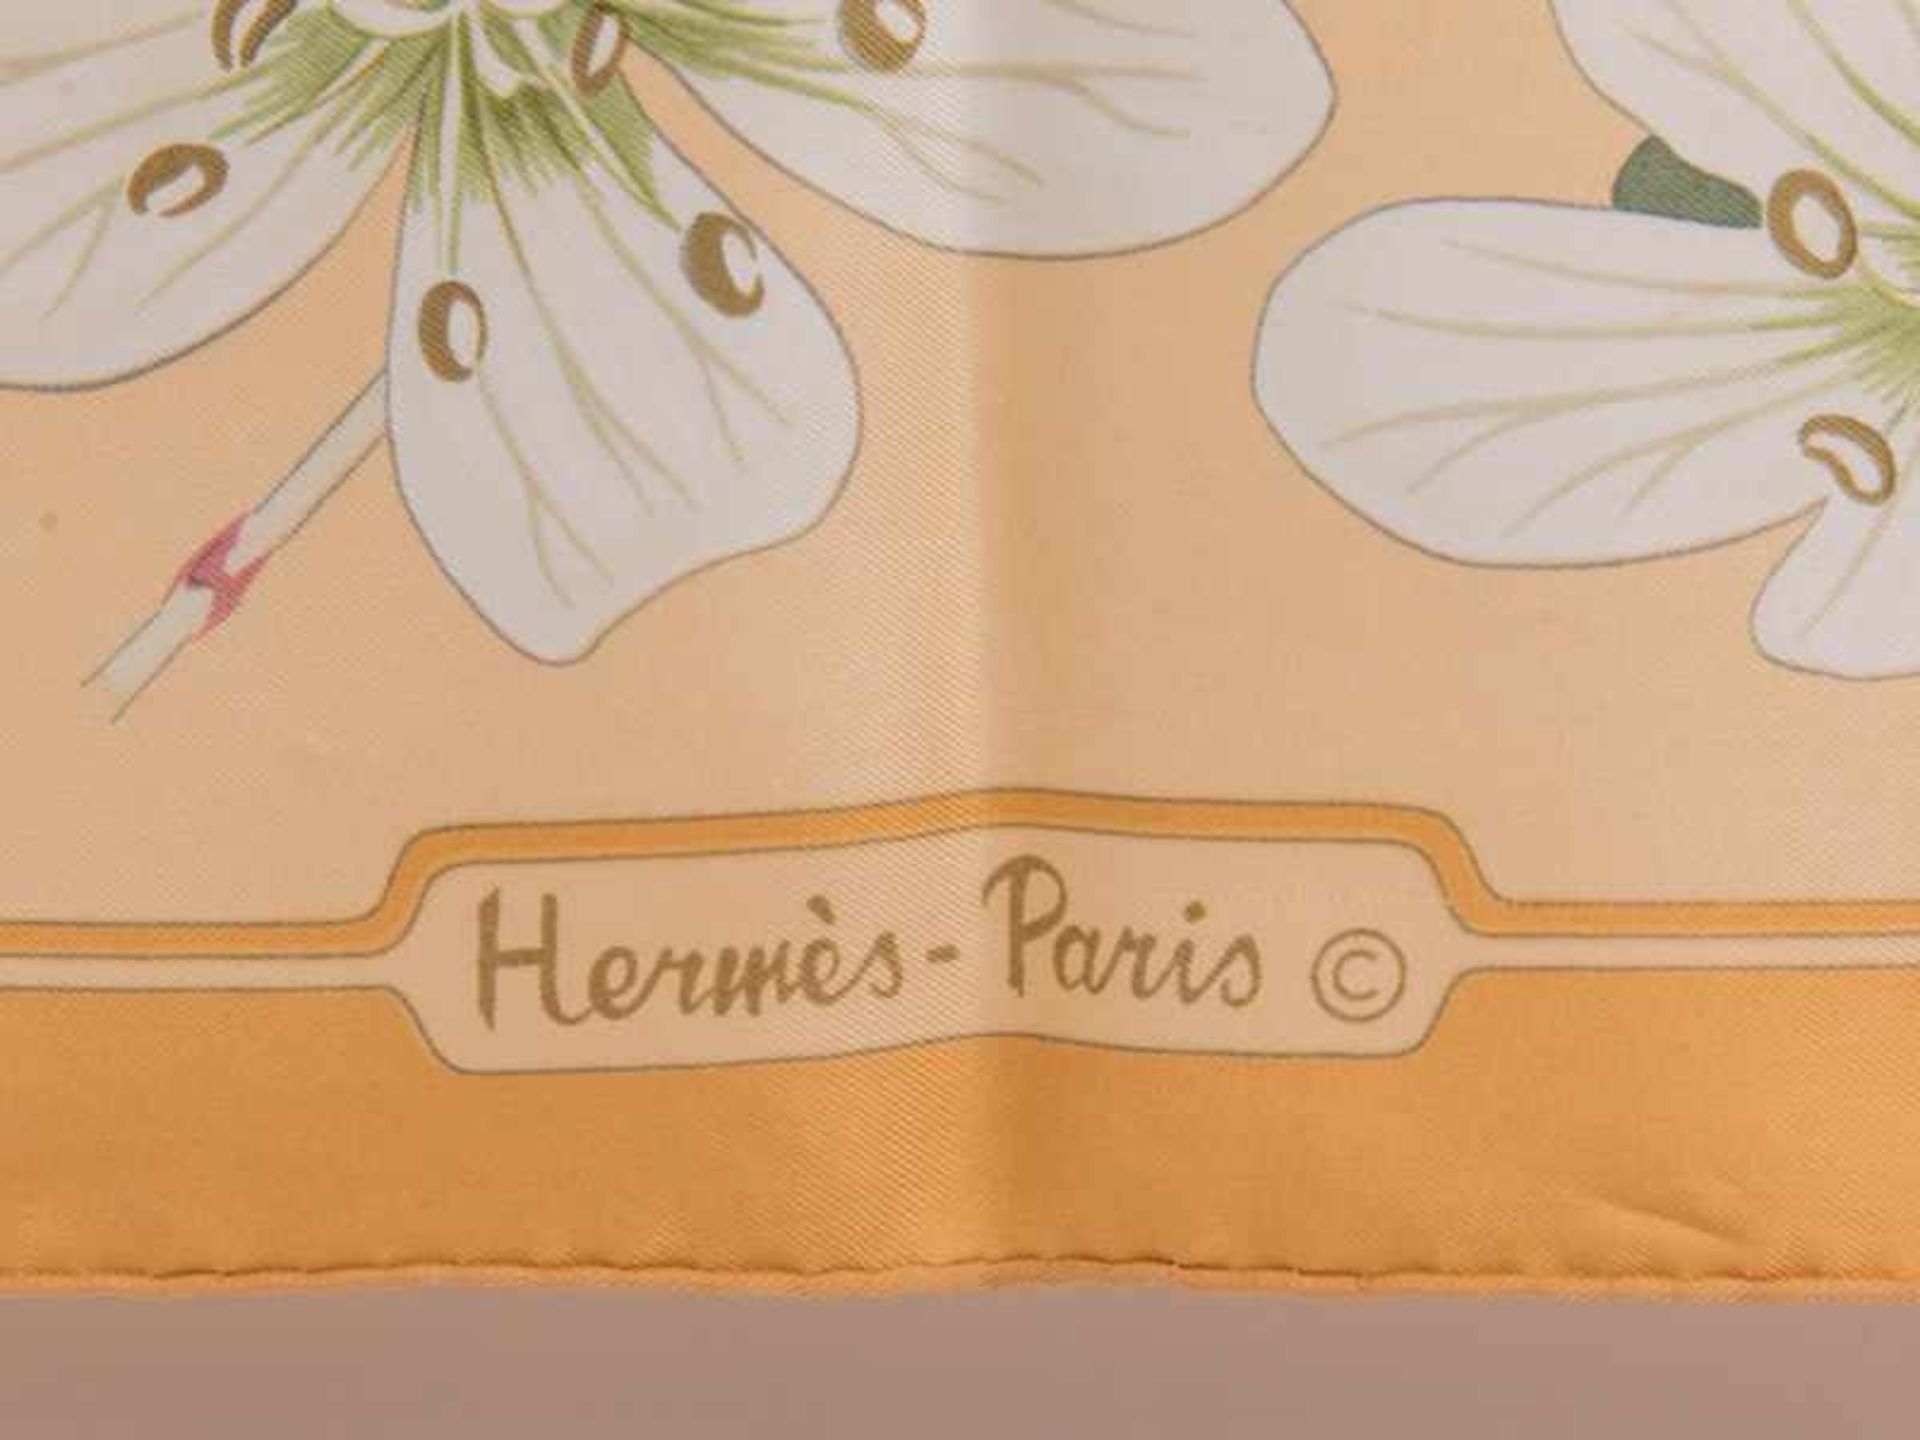 Vintage-Seidentuch von Hermès, Paris, 20. Jh. 100% Seide. Handrolliert. Maße 88 x 88 cm. - Image 2 of 3